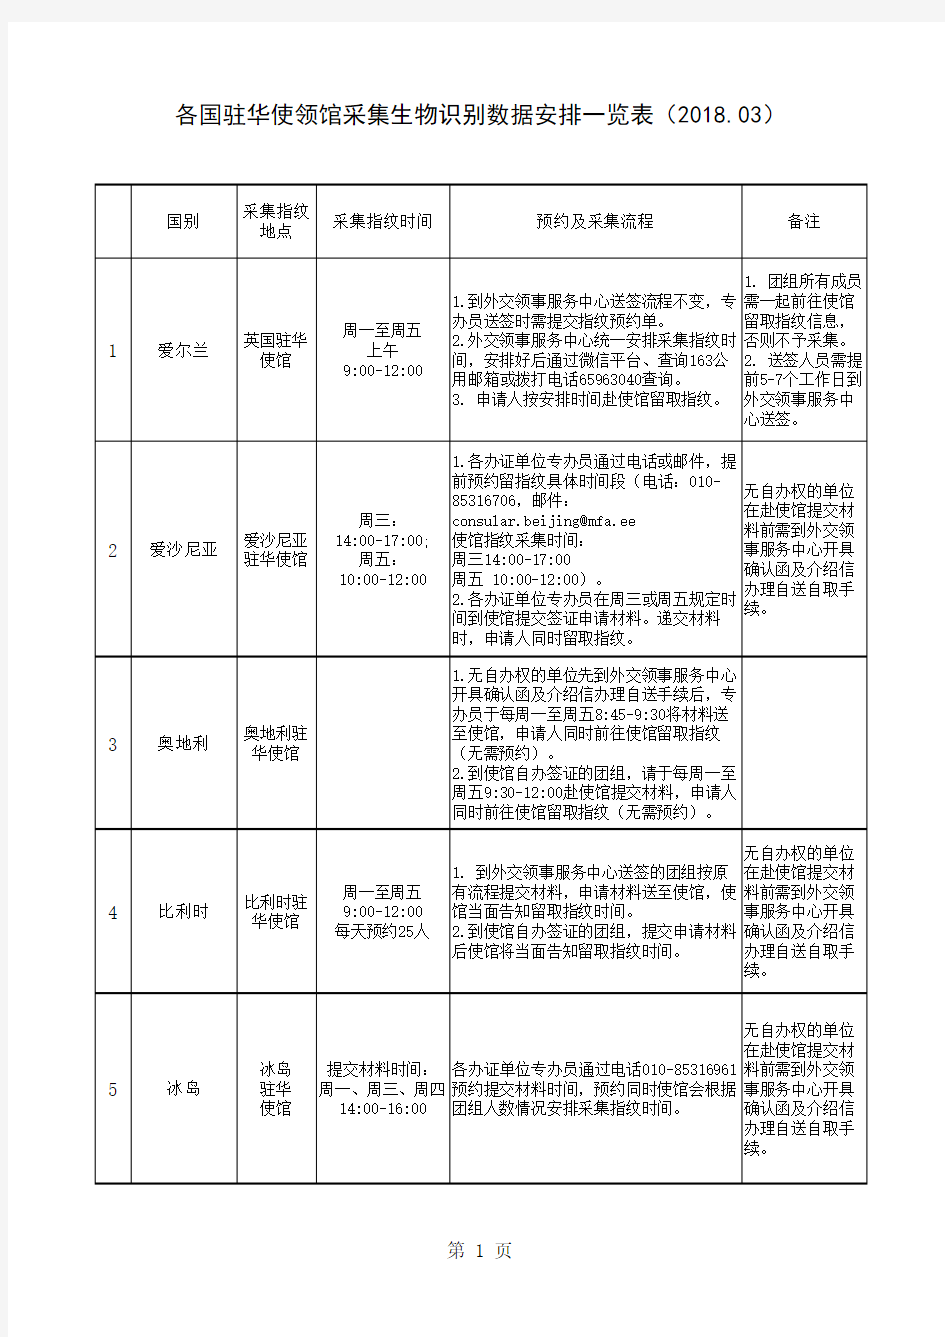 (2018.03)对外-各国驻华使领馆采集生物识别数据安排一览表